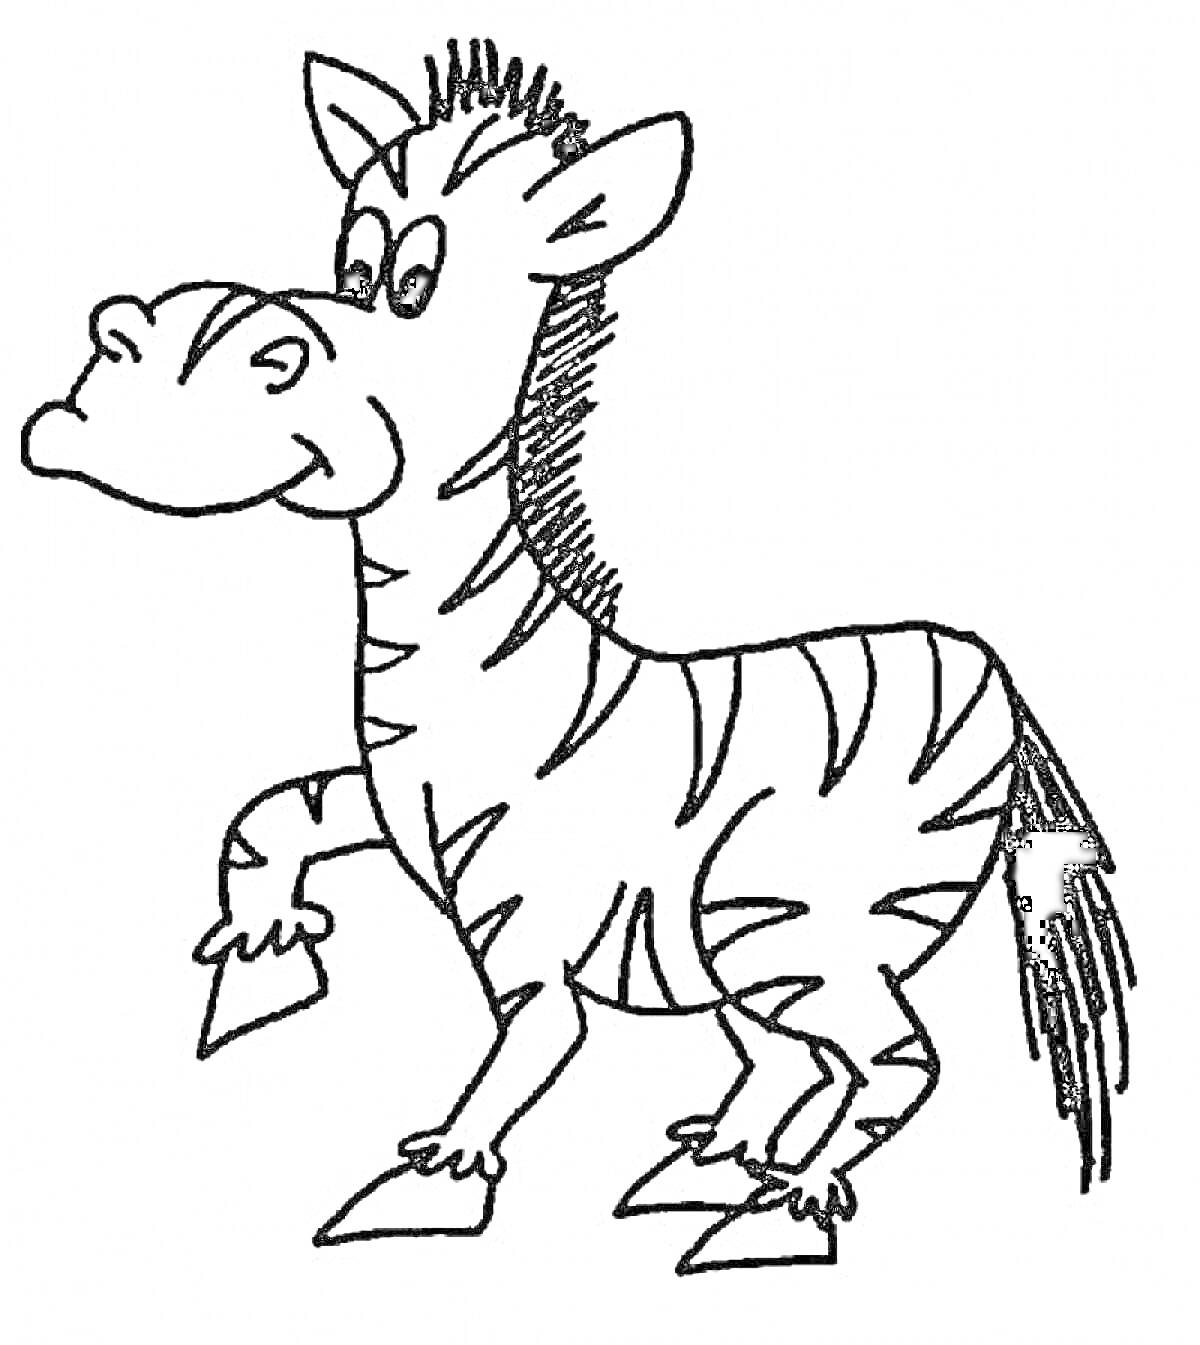 Зебра с поднятой передней ногой и полосатым хвостом